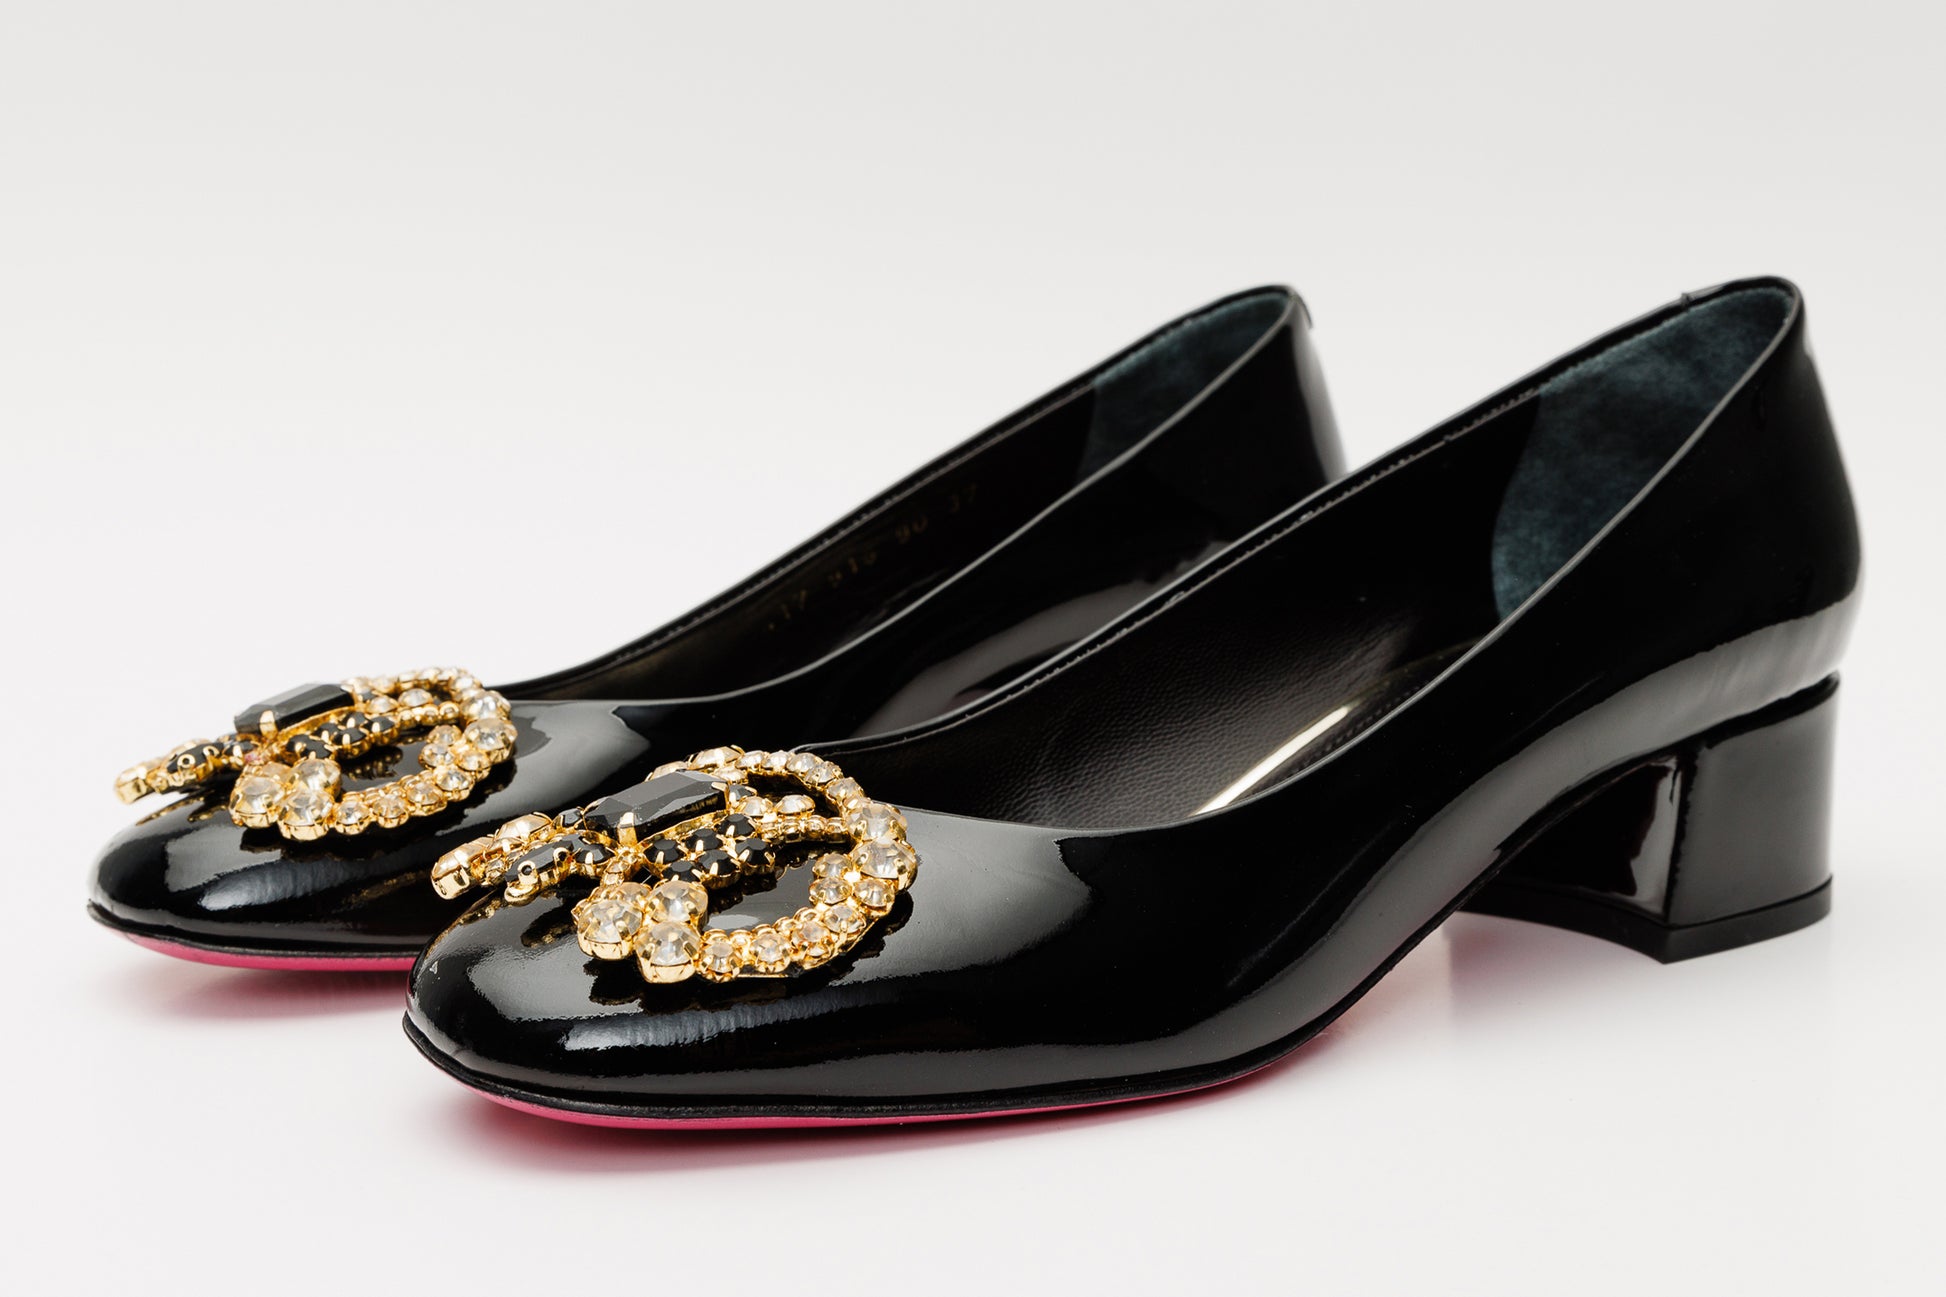 The Foggia Black Leather Block Heel Pump Women Shoe – Vinci Leather Shoes